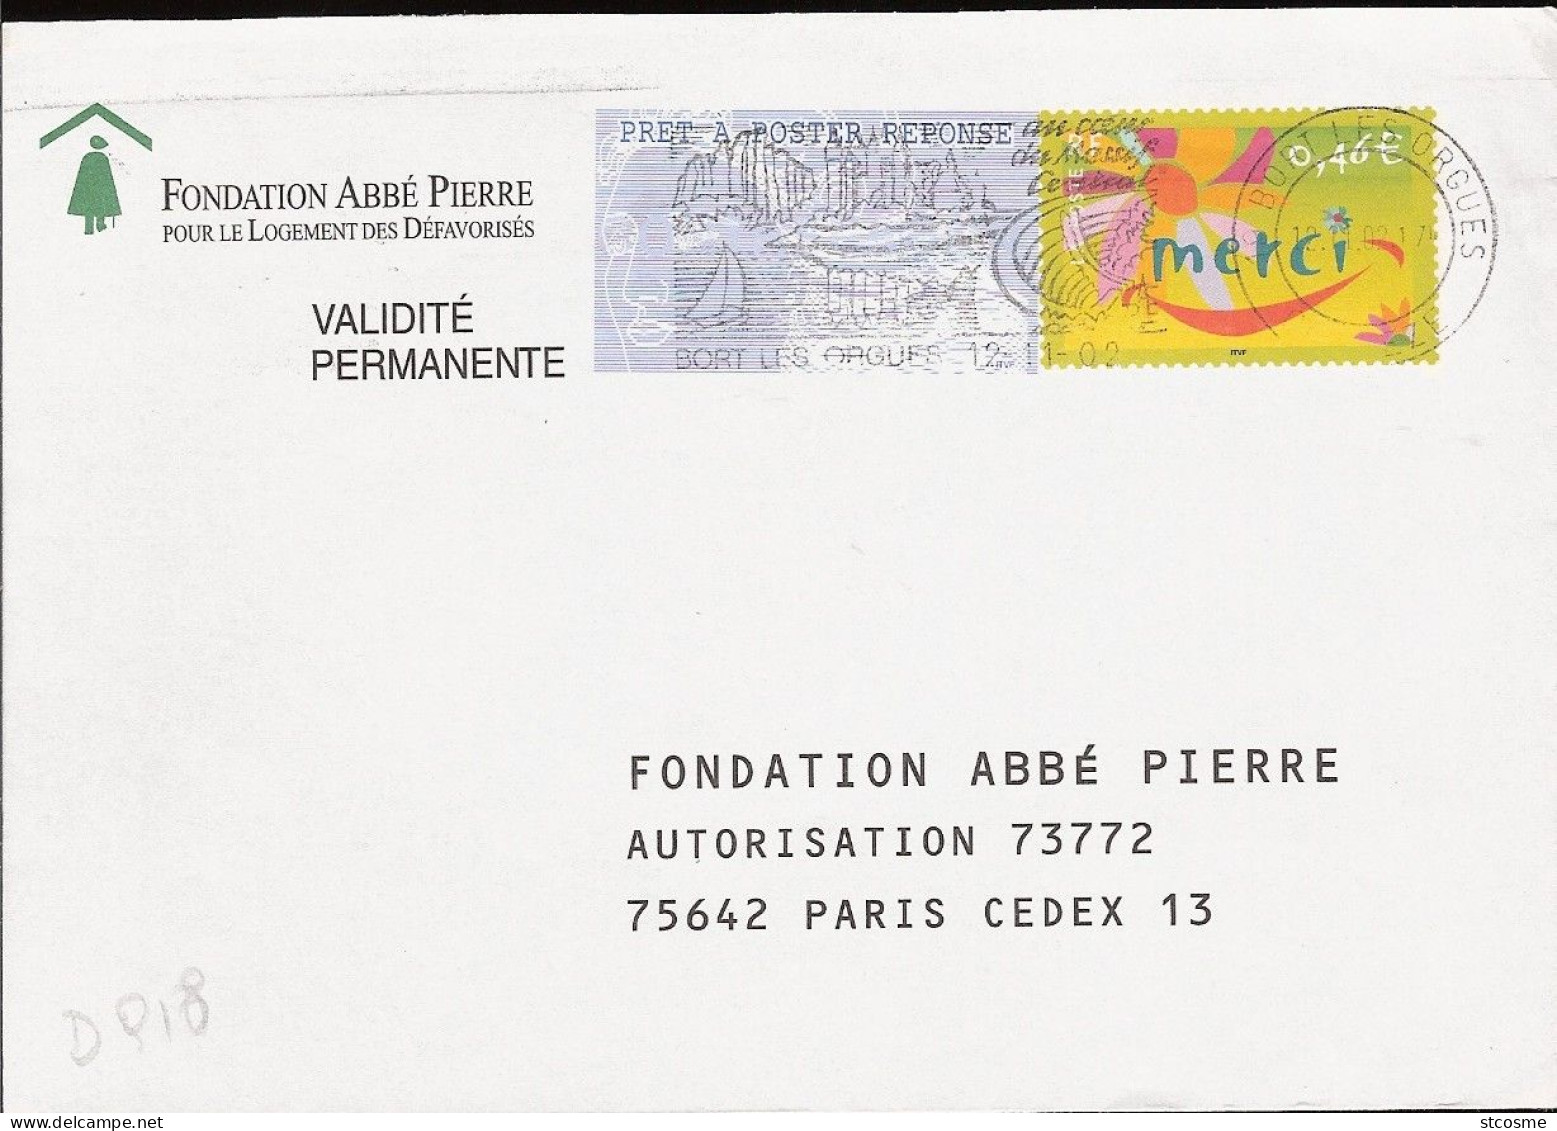 D0918 - Entier / Stationery / PSE - PAP Réponse Merci - Fondation Abbé Pierre - (pas De Numéro D'agrément) - Prêts-à-poster:reply